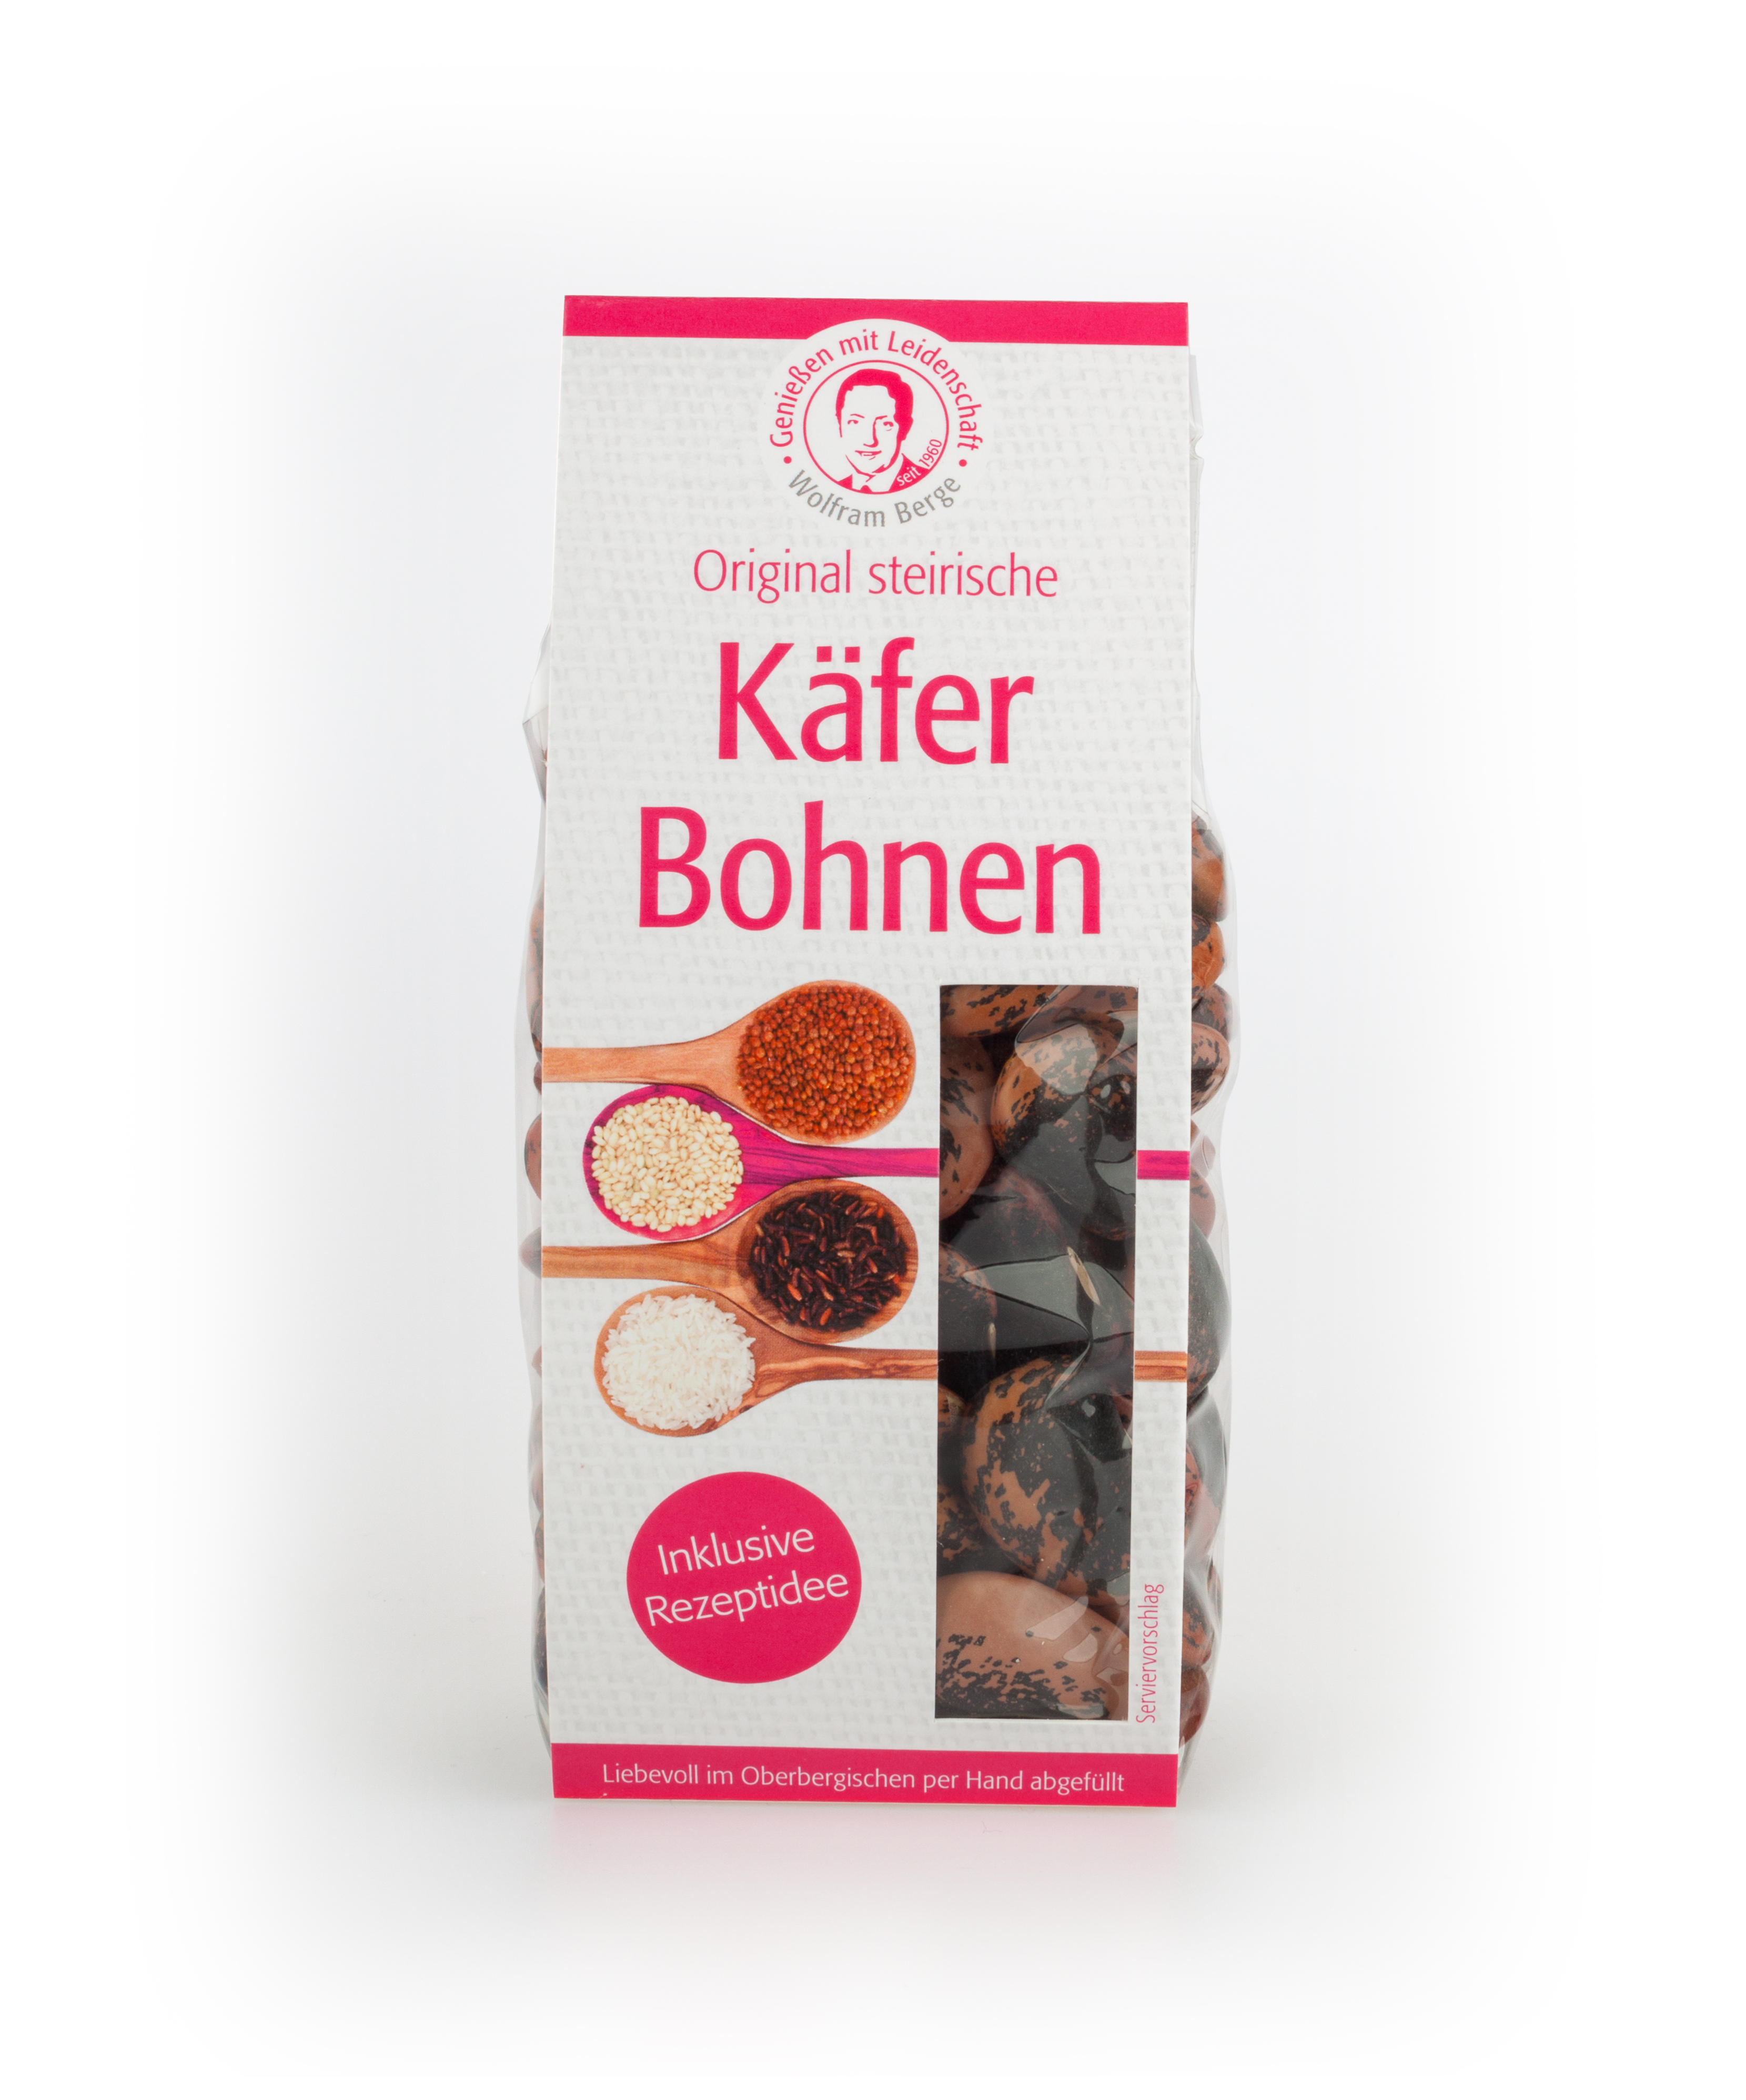 Original steirische Käfer Bohnen